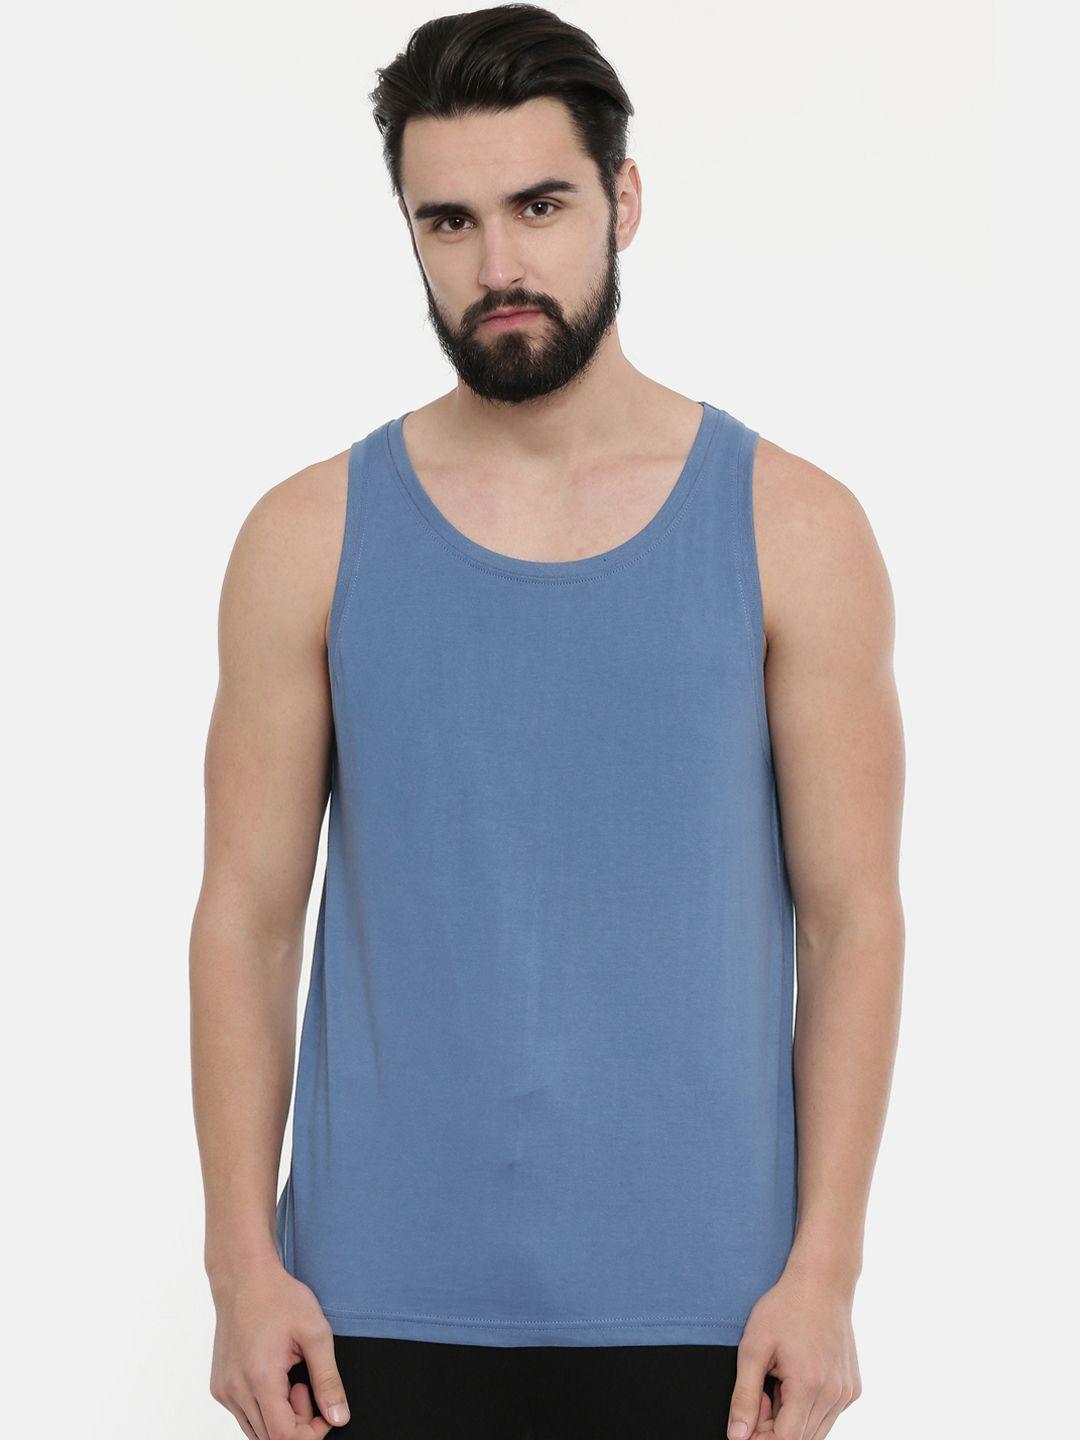 bushirt men blue solid round neck pure cotton t-shirt